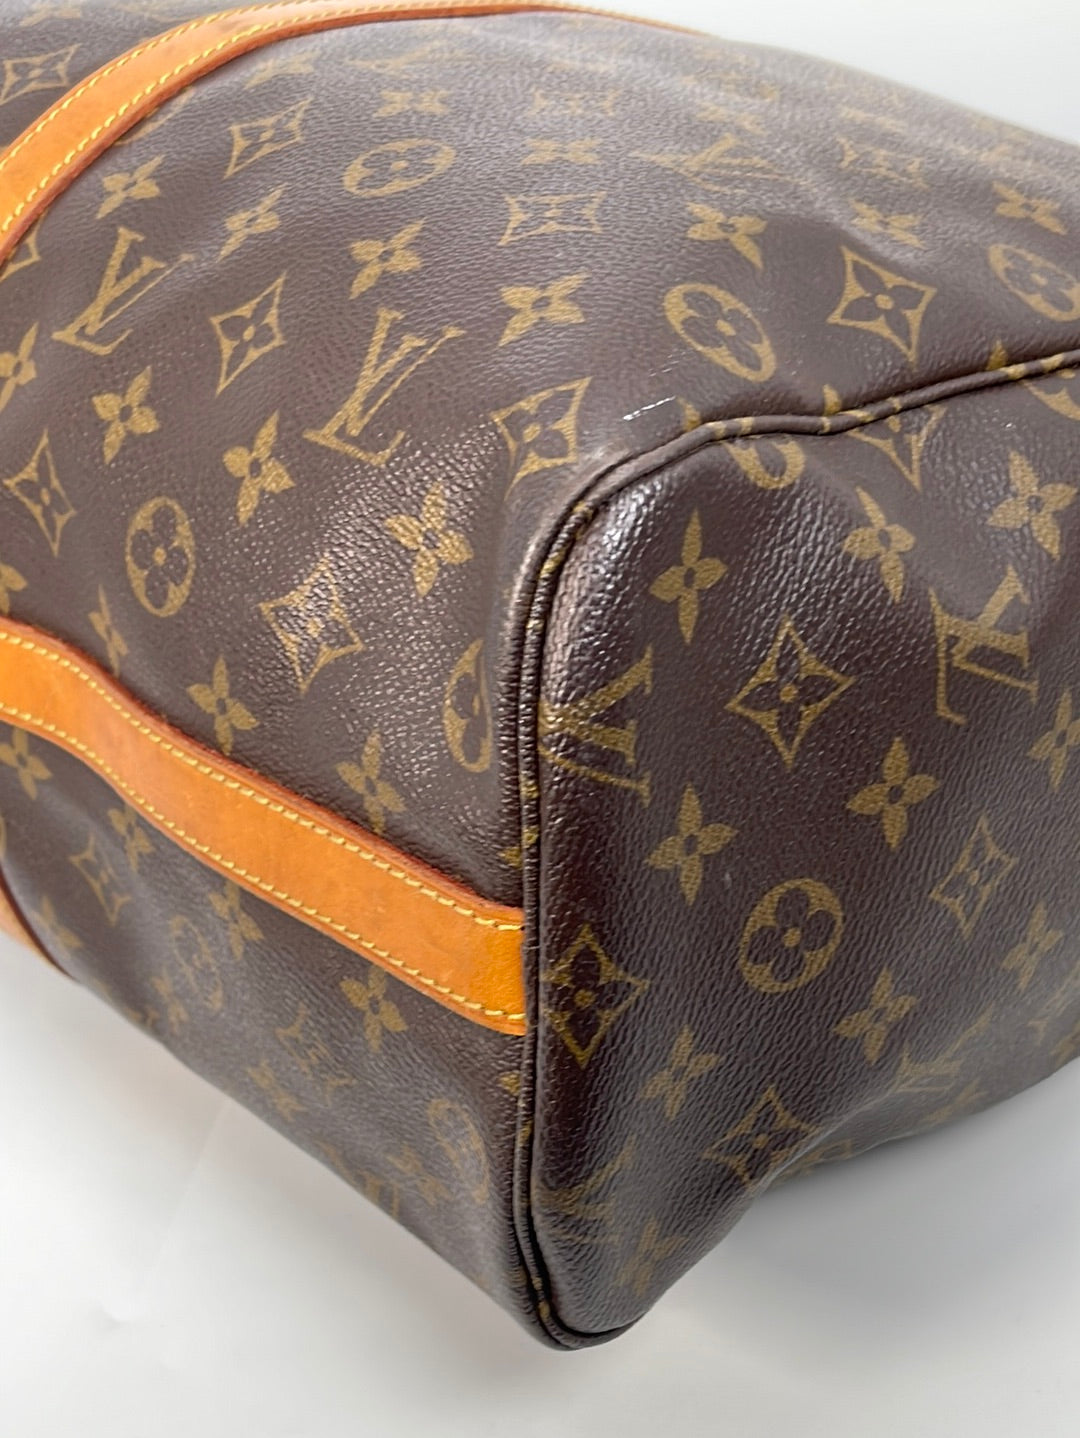 Vintage Louis Vuitton Monogram Flanerie 50 Duffle Bag NC1920 030123